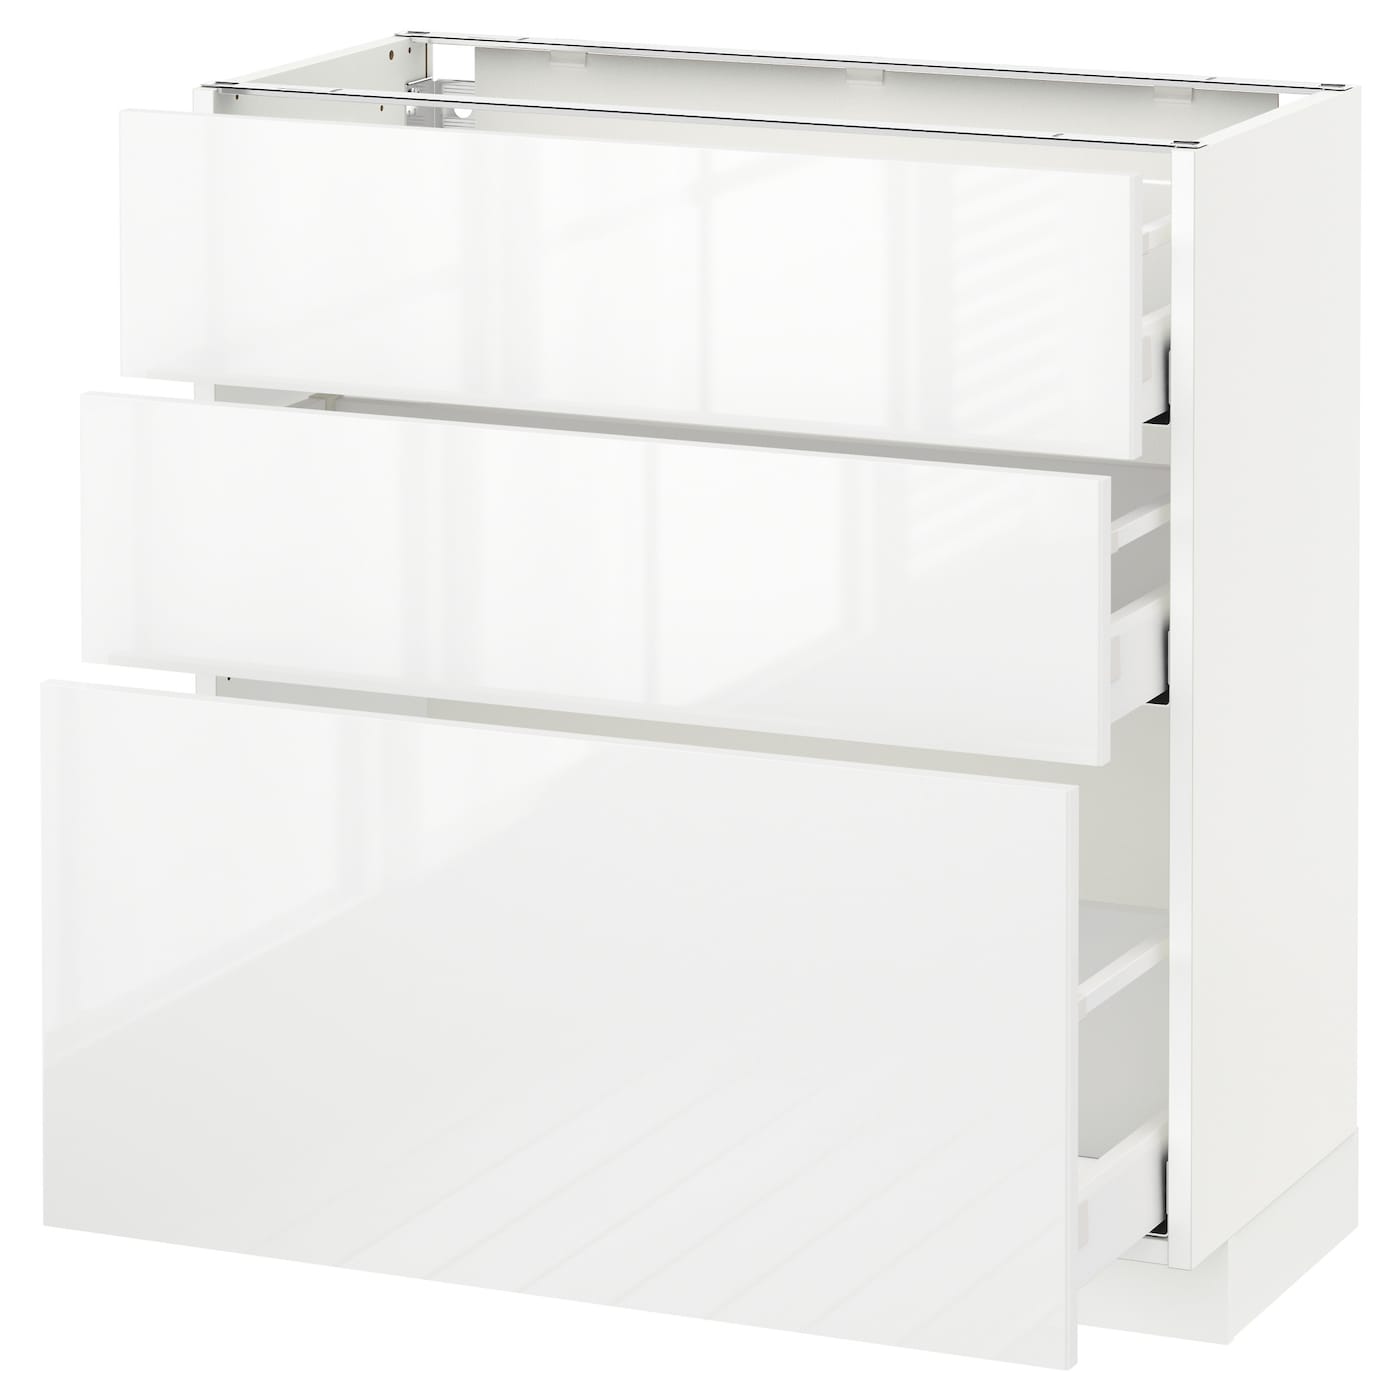 Напольный кухонный шкаф  - IKEA METOD MAXIMERA, 88x39x80см, белый, МЕТОД МАКСИМЕРА ИКЕА